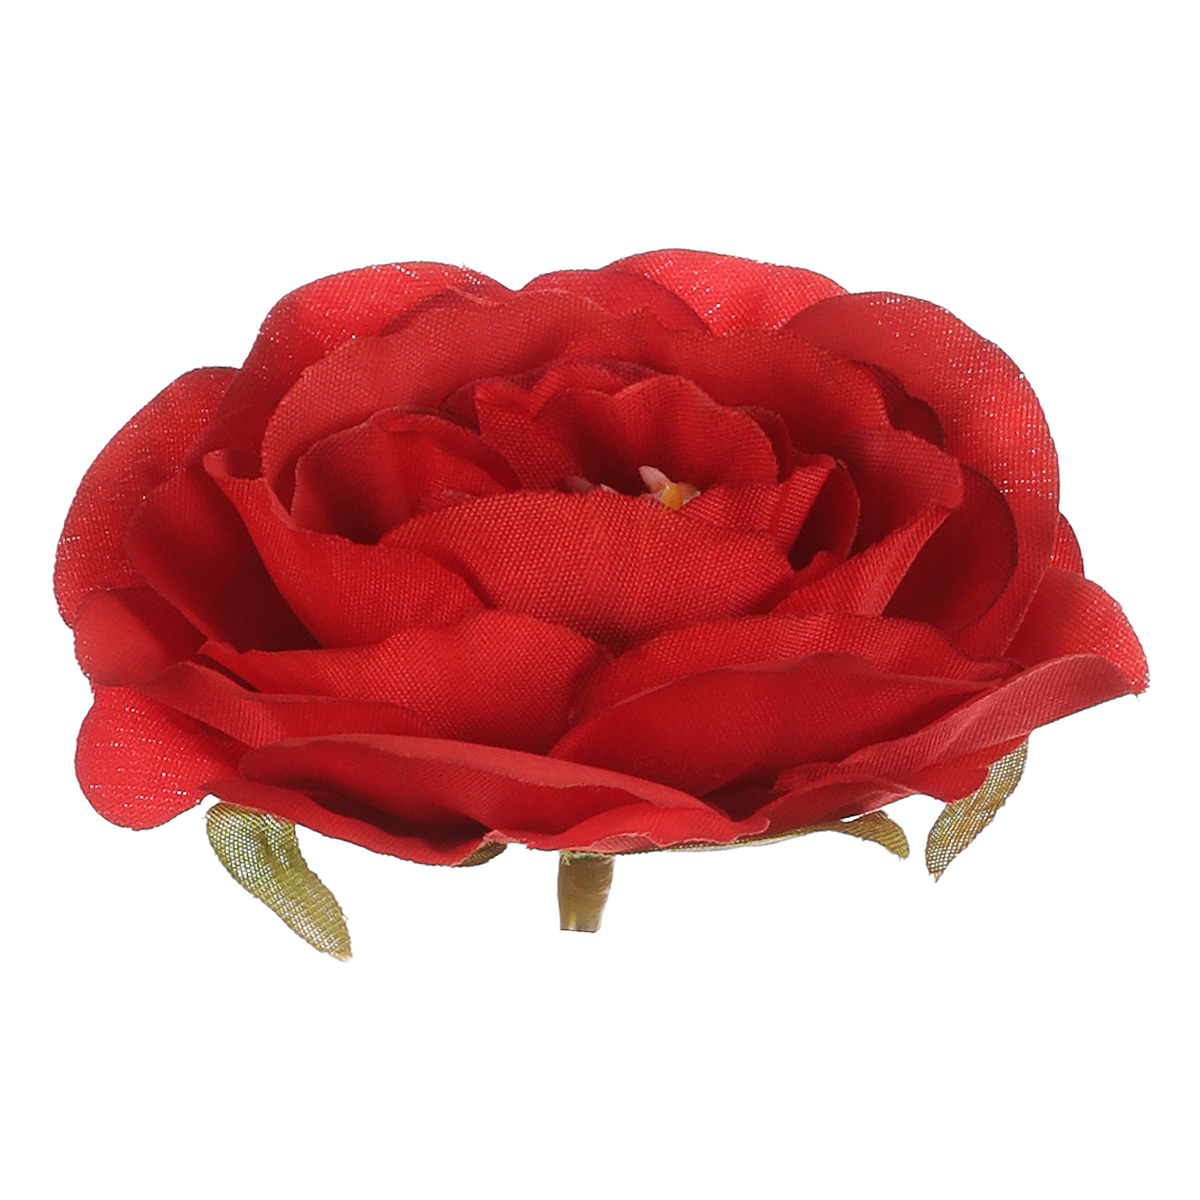 Růže, barva červená. Květina umělá vazbová. Cena za balení 12 kusů.